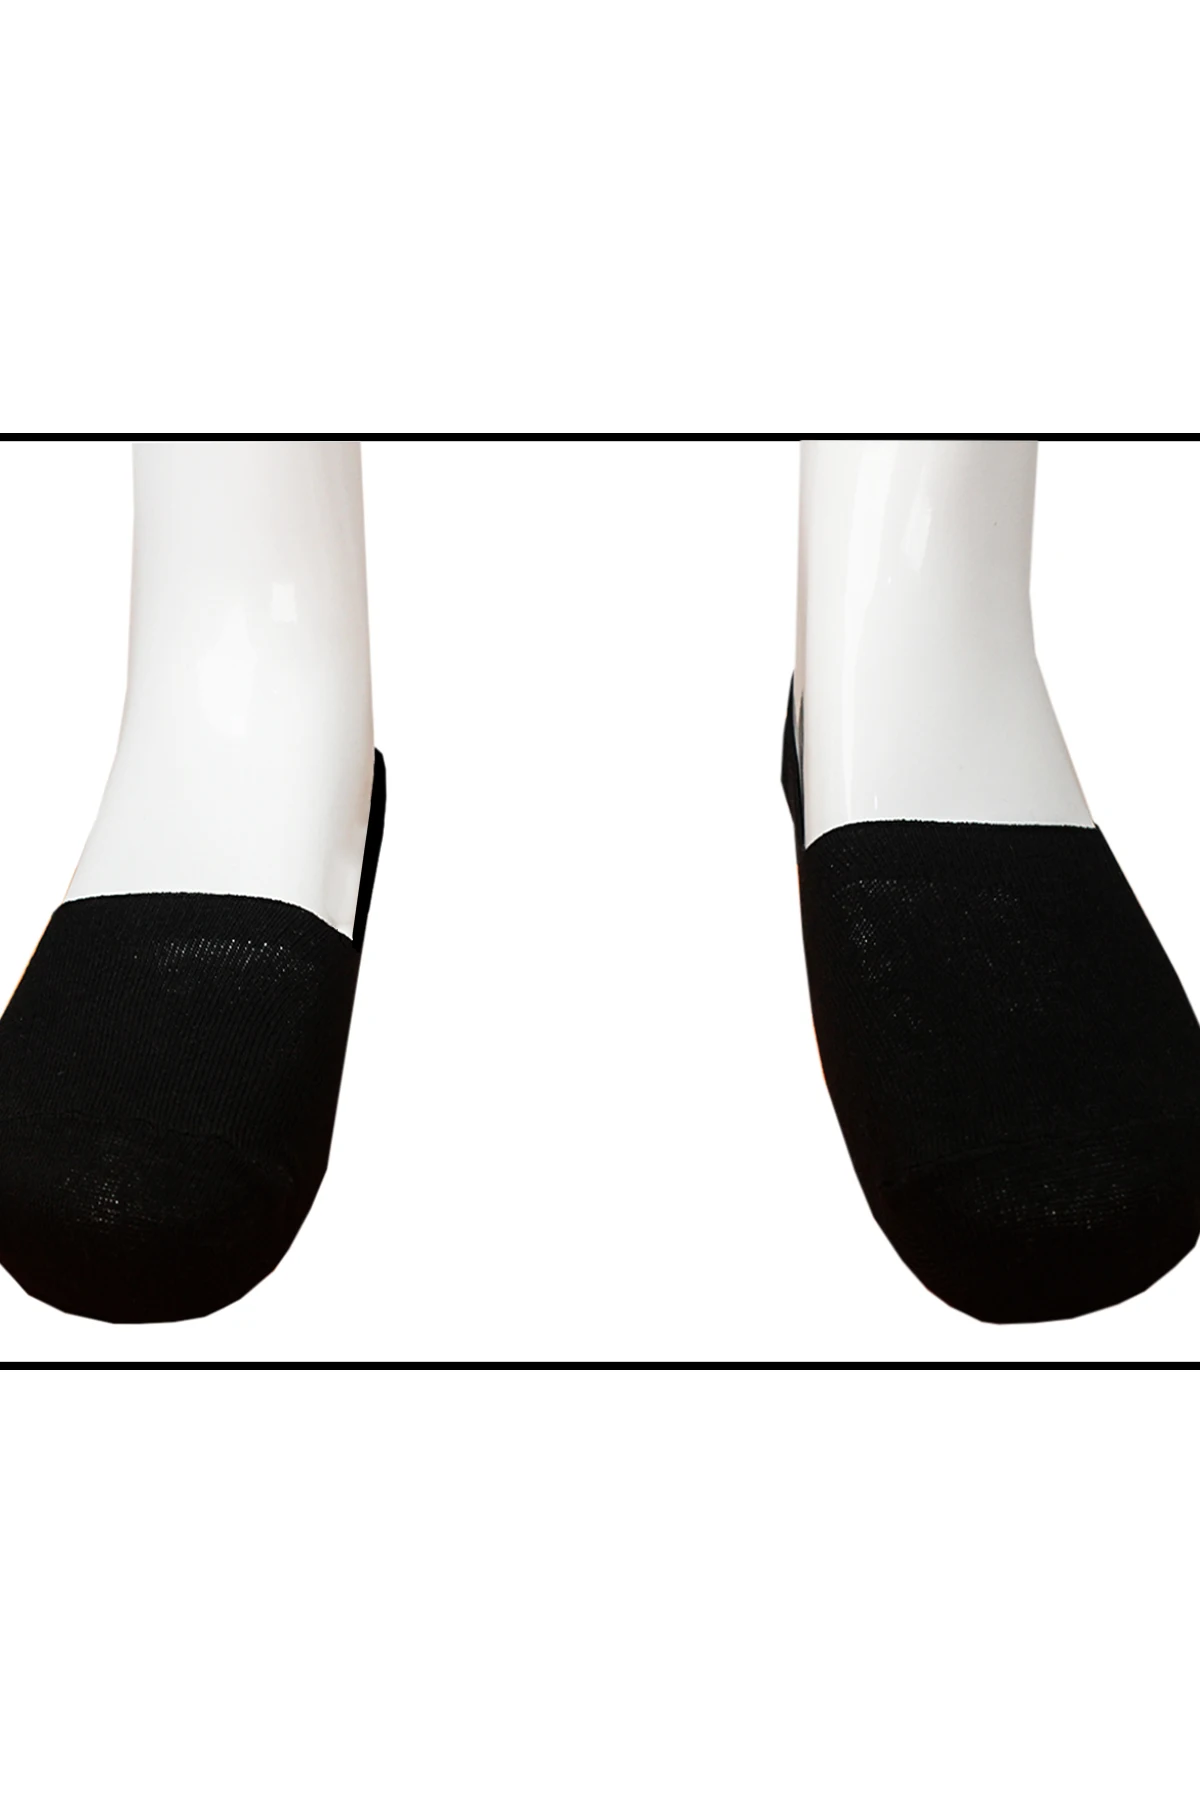 Мужские носки-тапочки размера плюс, хлопковые невидимые носки-башмачки без показа, модные мужские носки сезона лето-осень от EU41-44 Varetta - Turkey от AliExpress RU&CIS NEW